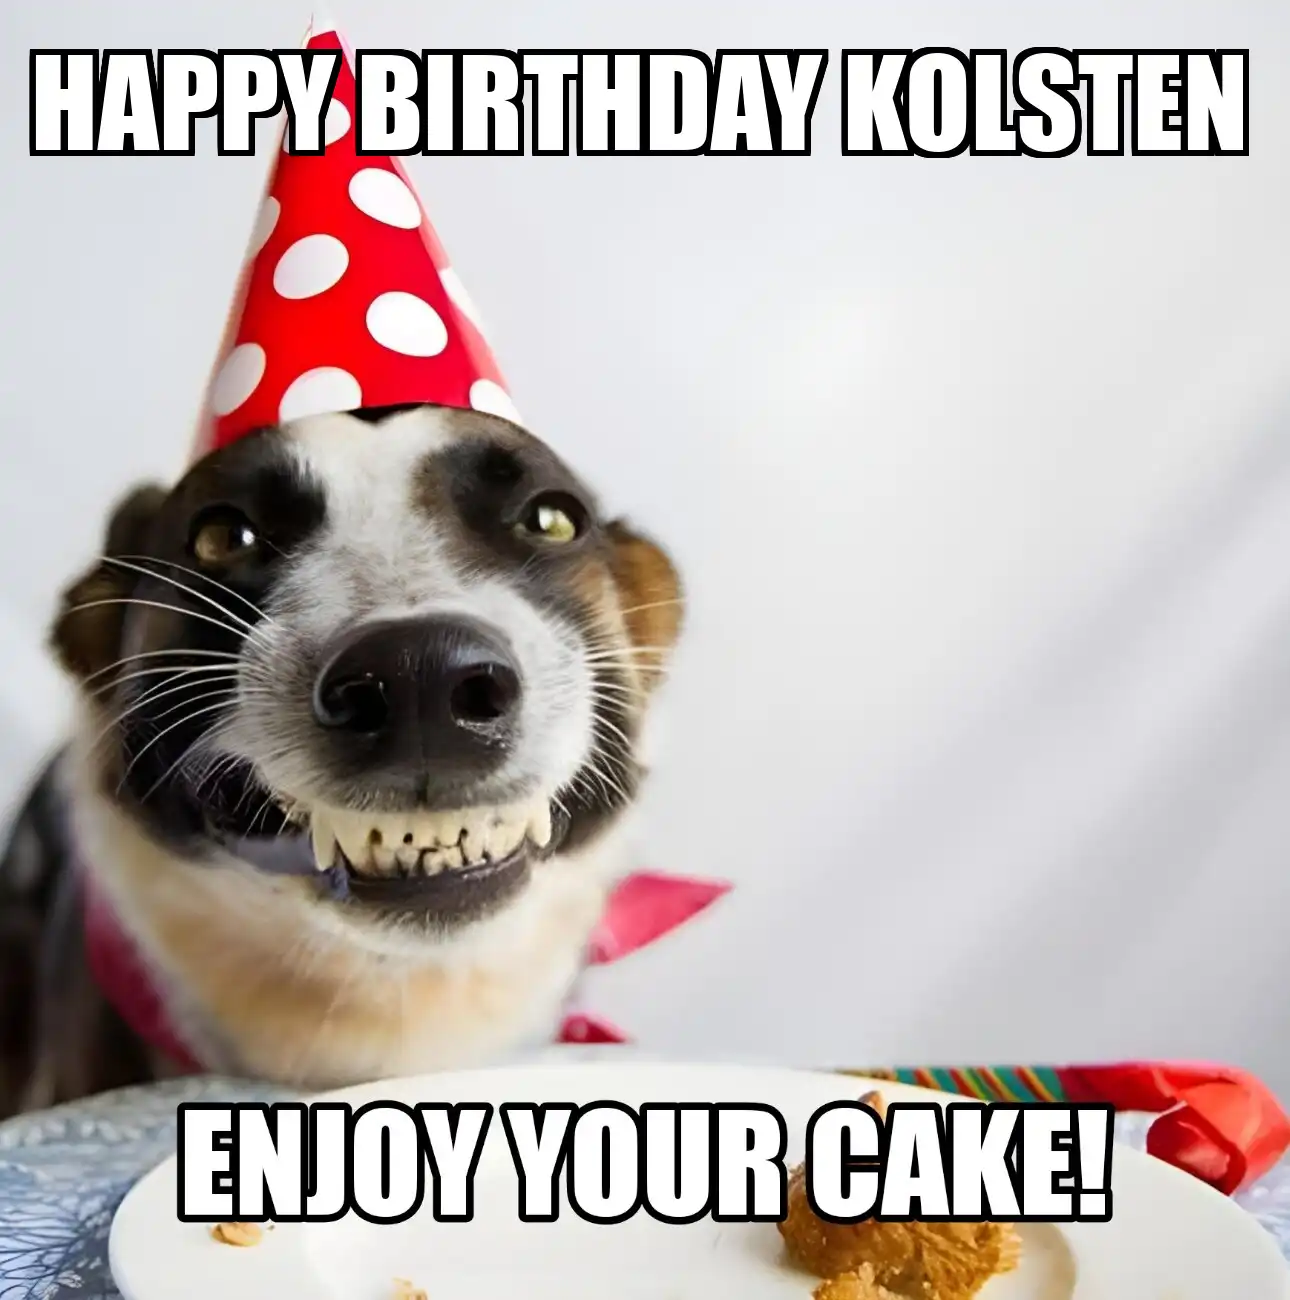 Happy Birthday Kolsten Enjoy Your Cake Dog Meme